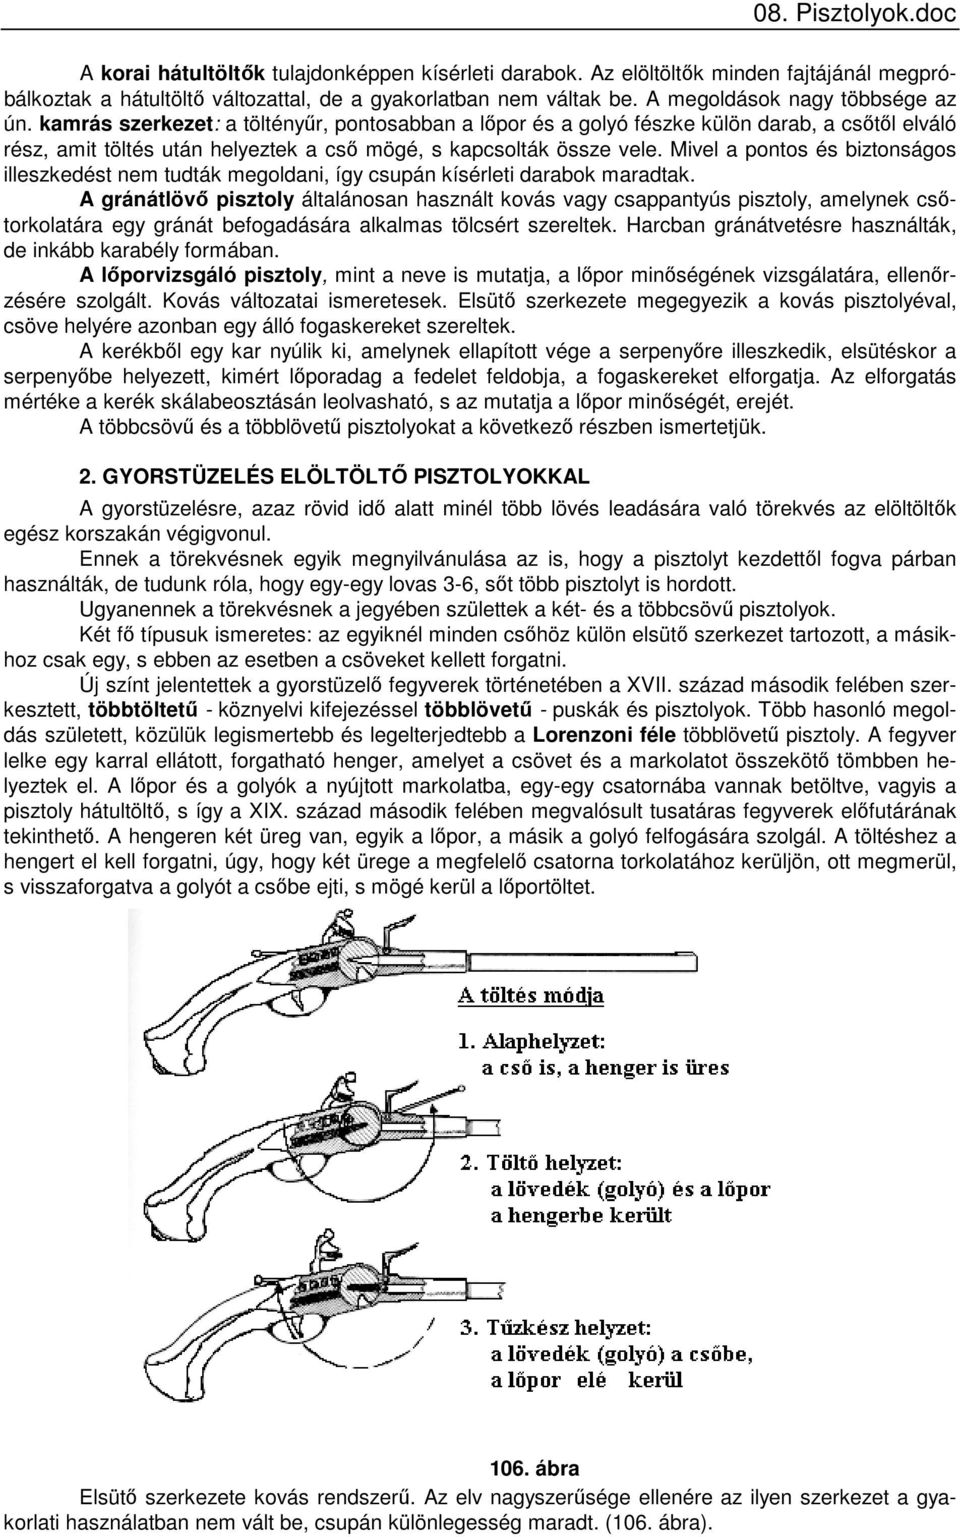 08. Pisztolyok.doc VIII. A PISZTOLYOK - PDF Ingyenes letöltés